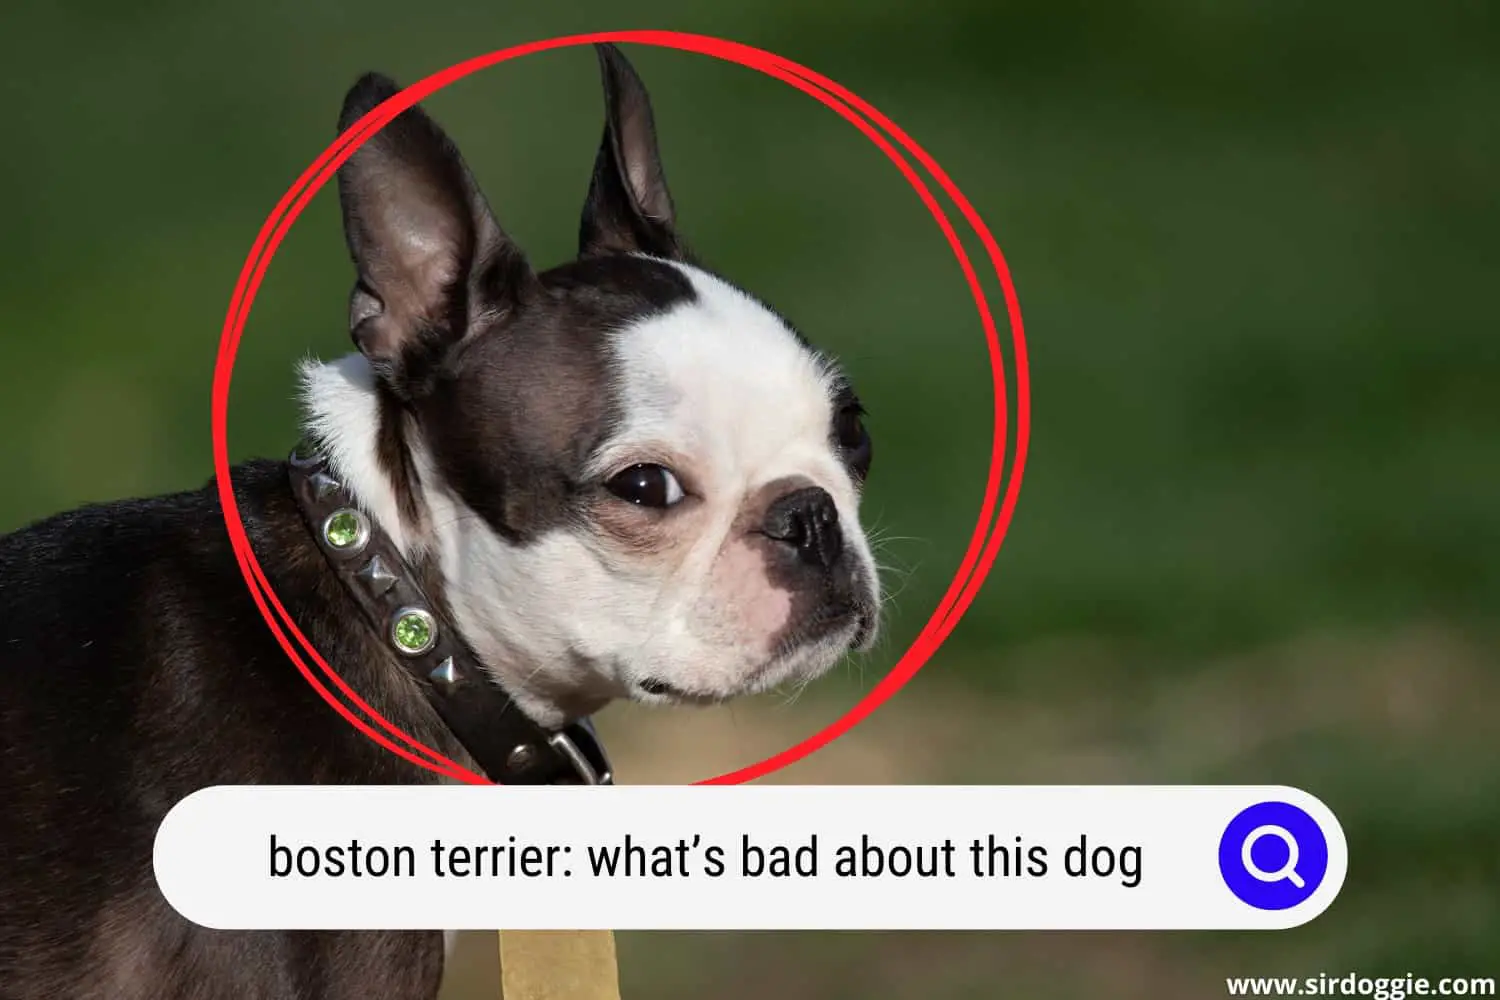 Boston Terrier dog